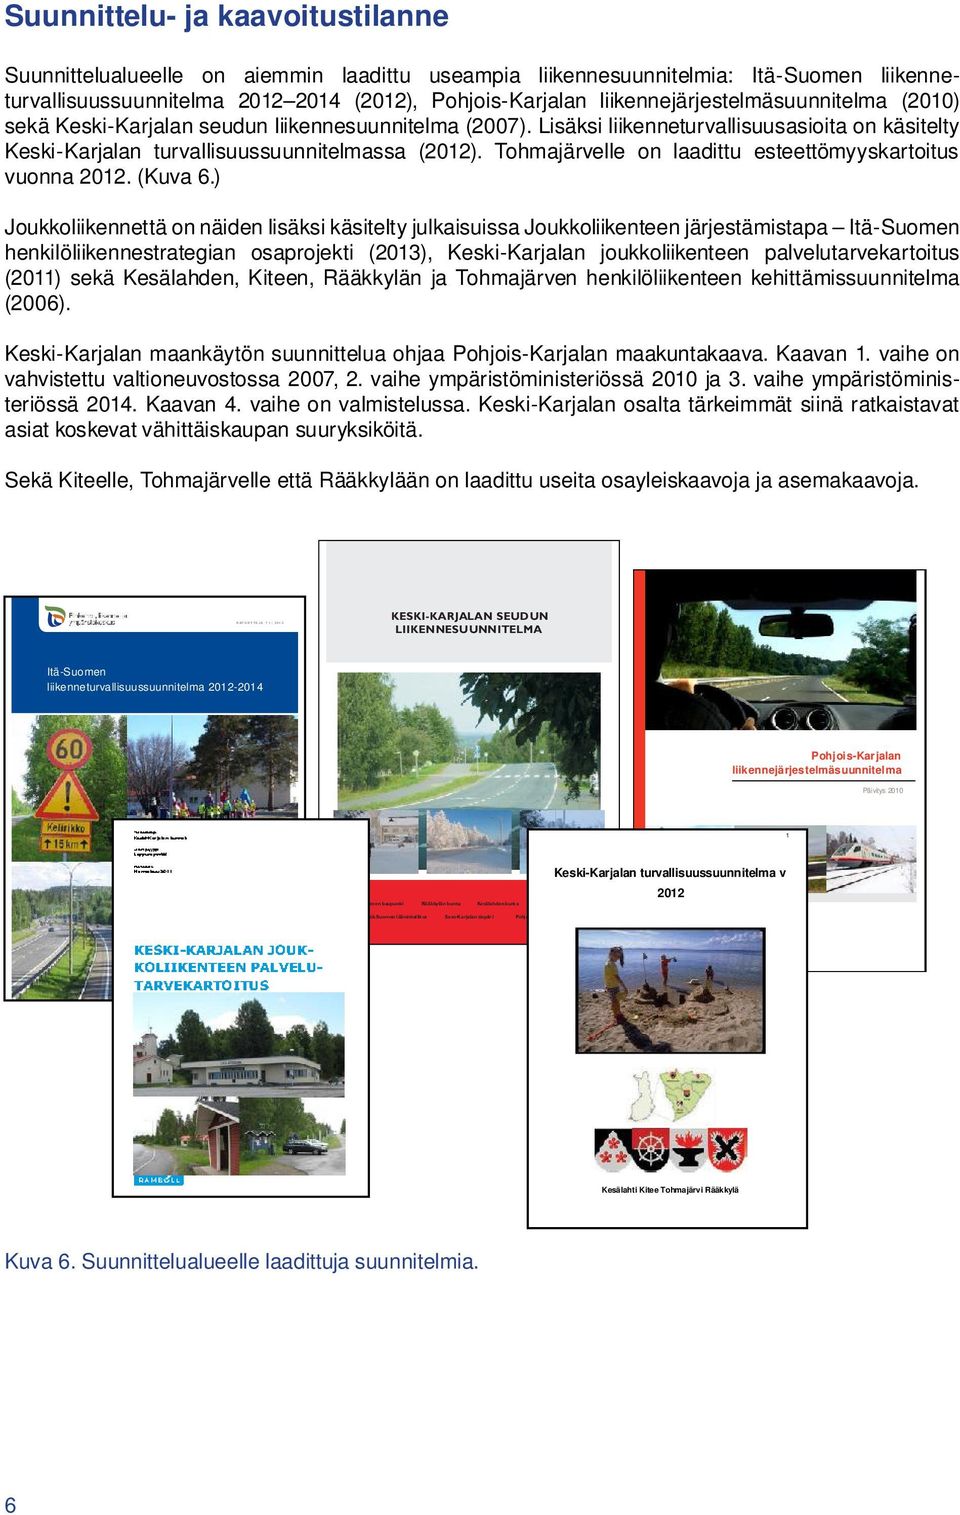 Lisäksi liikenneturvallisuusasioita on käsitelty Keski-Karjalan turvallisuussuunnitelmassa (2012). Tohmajärvelle on laadittu esteettömyyskartoitus vuonna 2012. (Kuva 6.